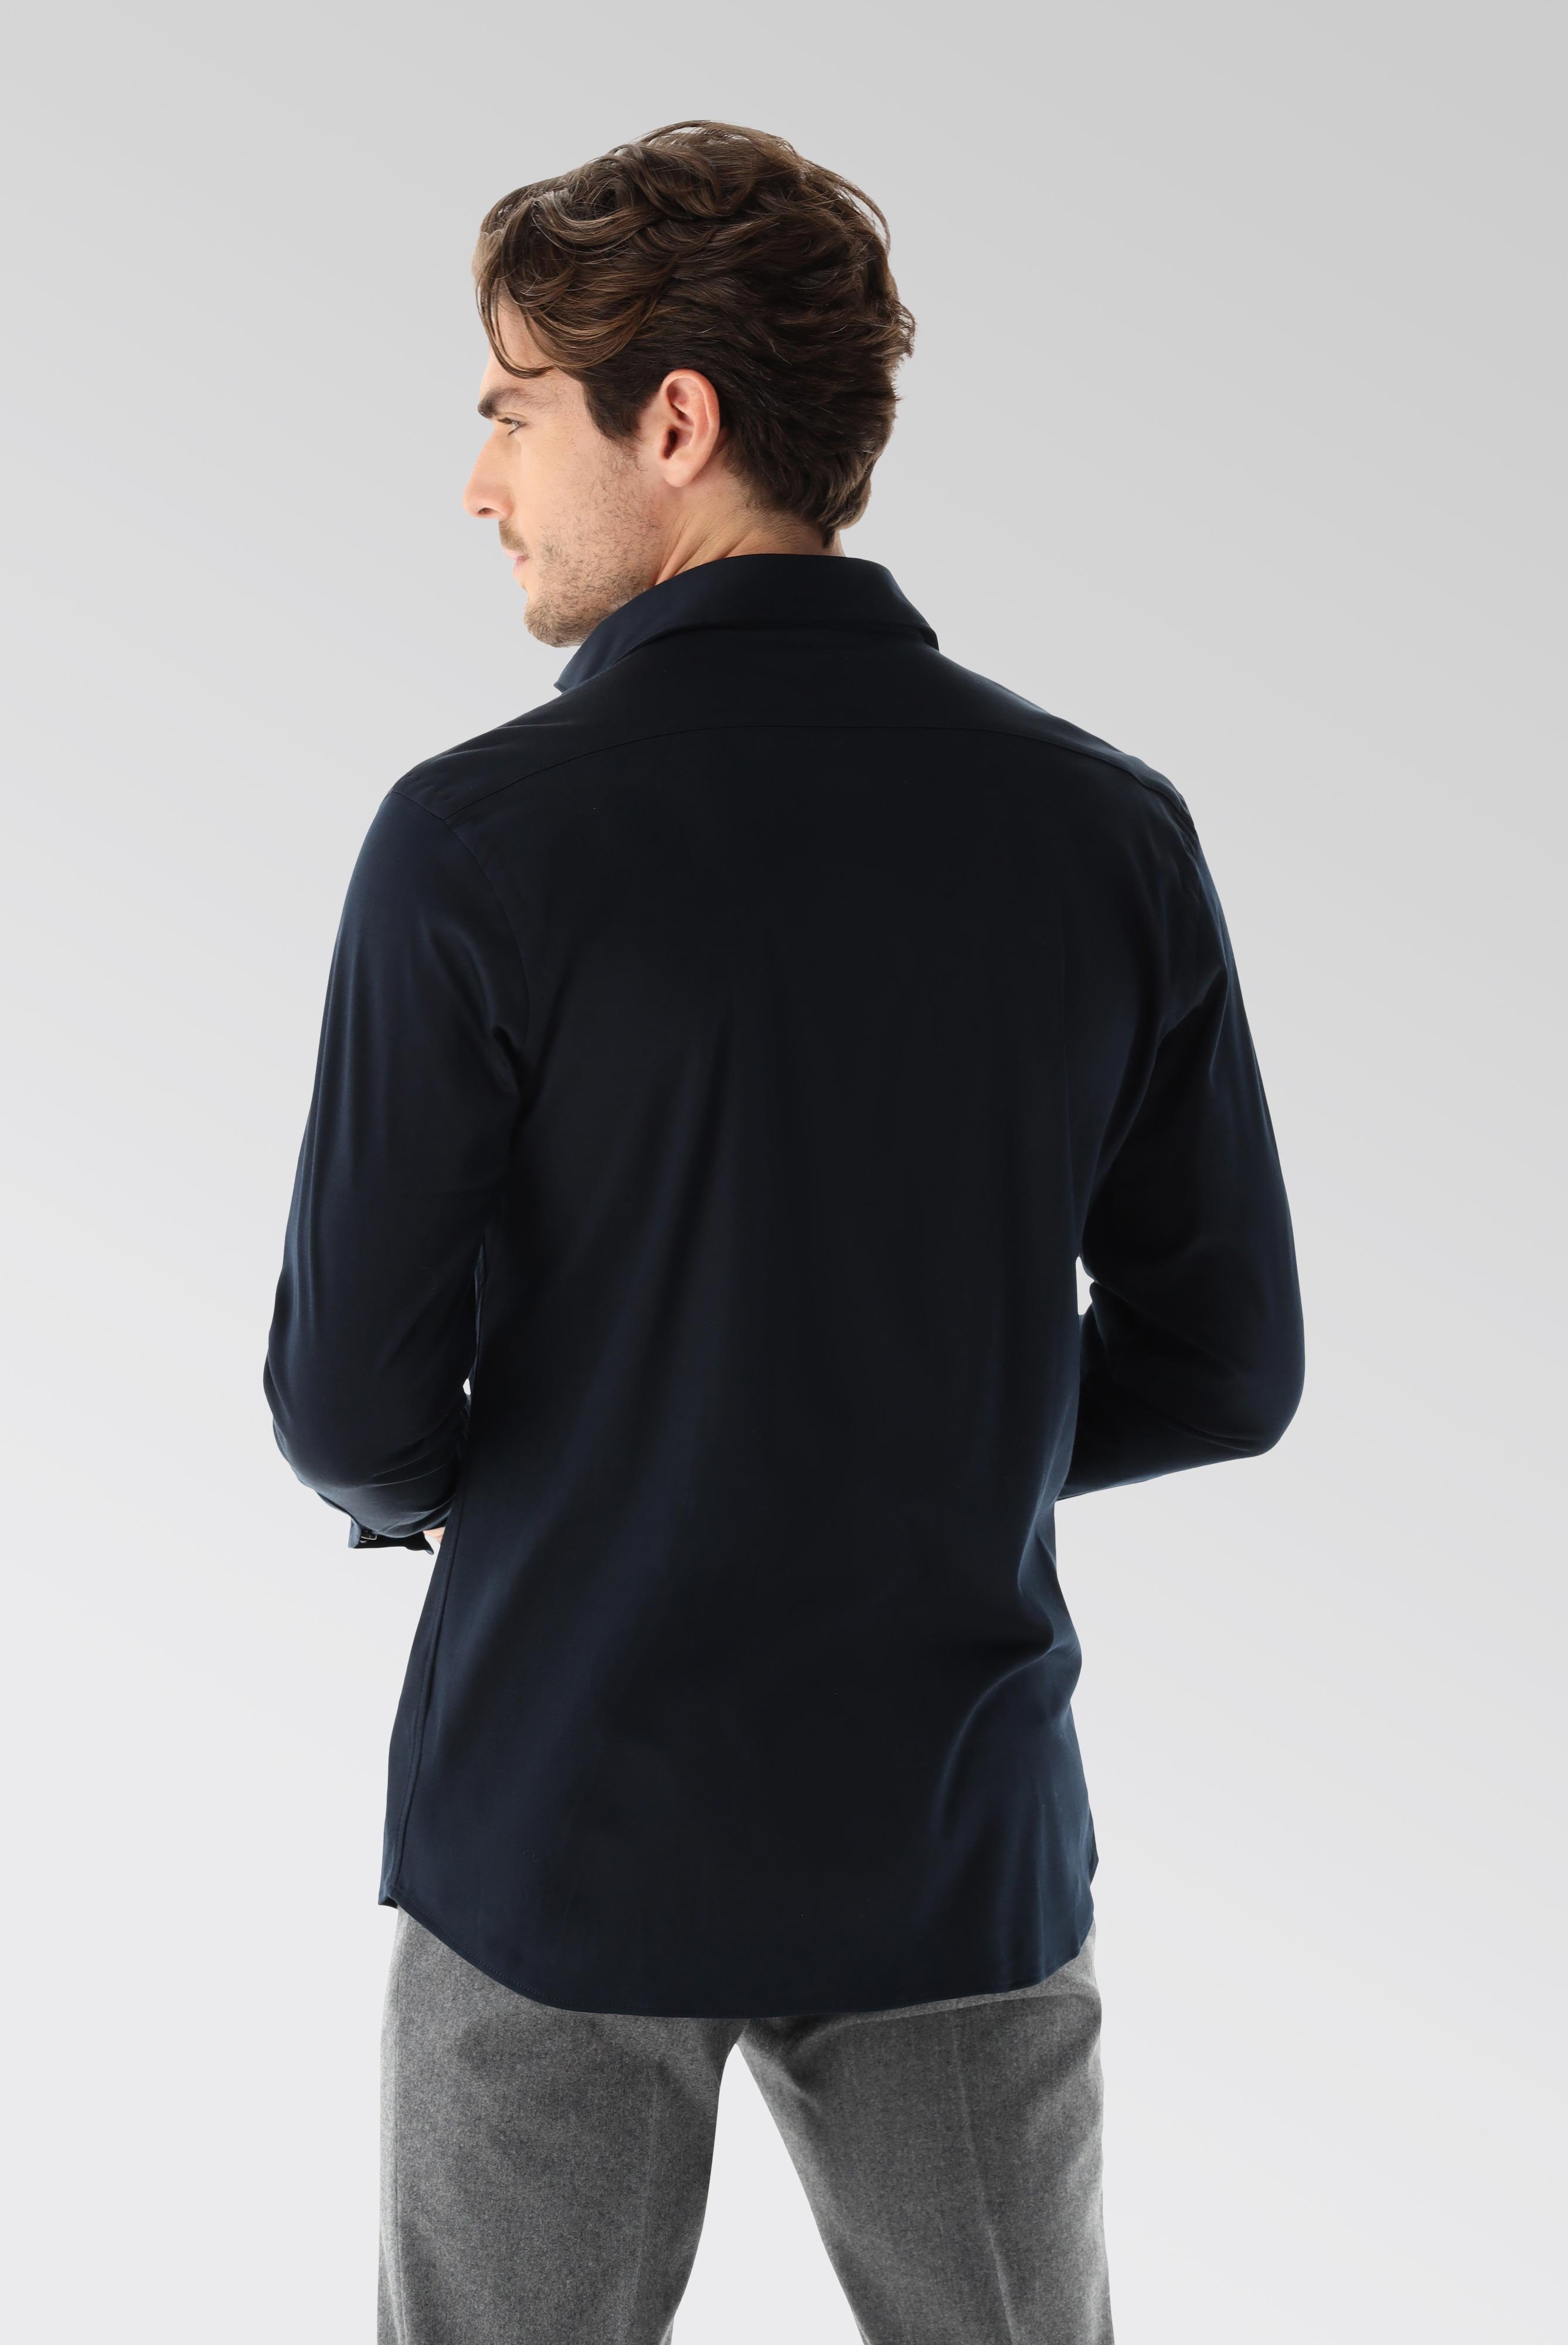 Bügelleichte Hemden+Jersey Hemd mit glänzender Optik Tailor Fit+20.1683.UC.180031.790.X3L